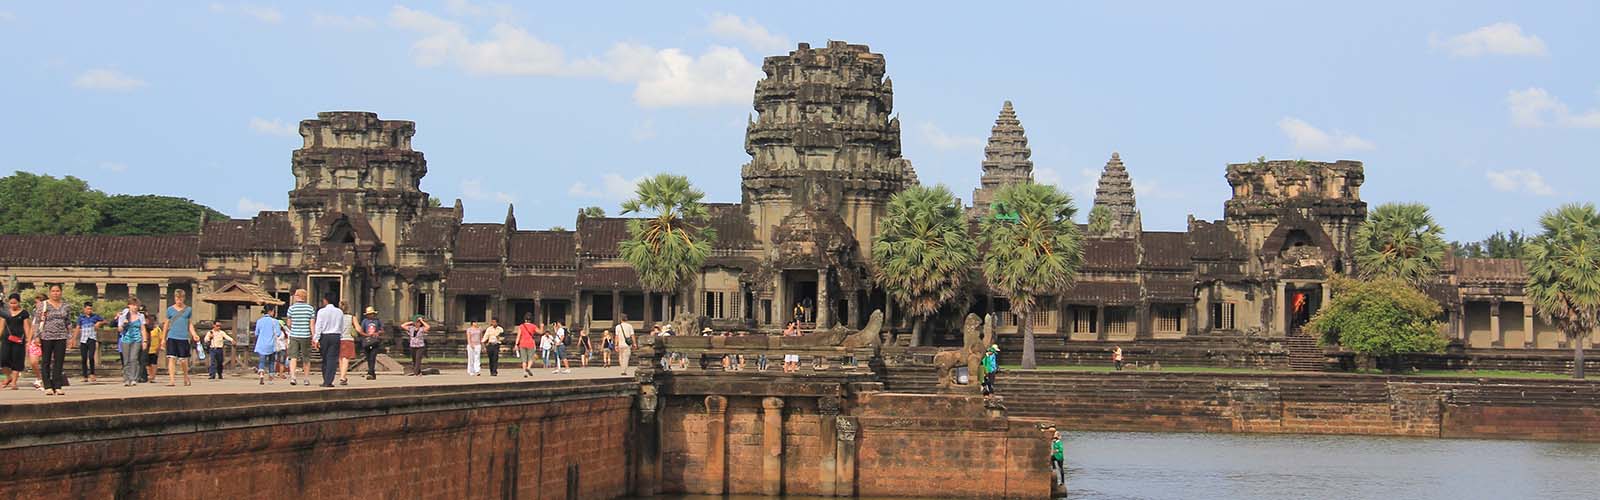 viaggio in cambogia, cambogia viaggio, viaggio cambogia, viaggi cambogia